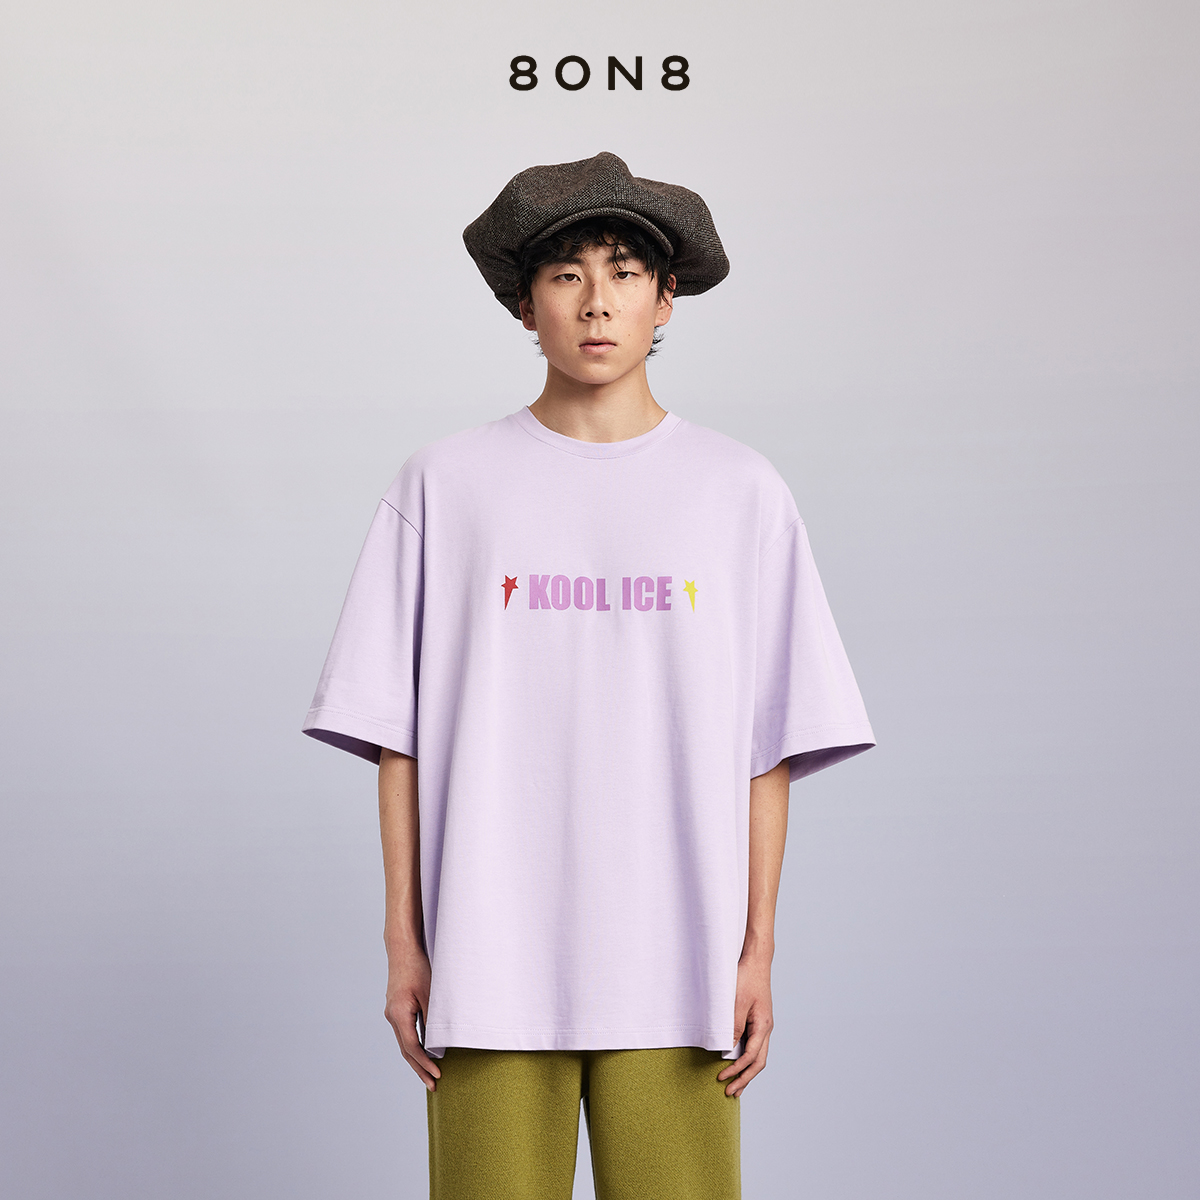 8on8淡紫色KOOLICE短袖T恤